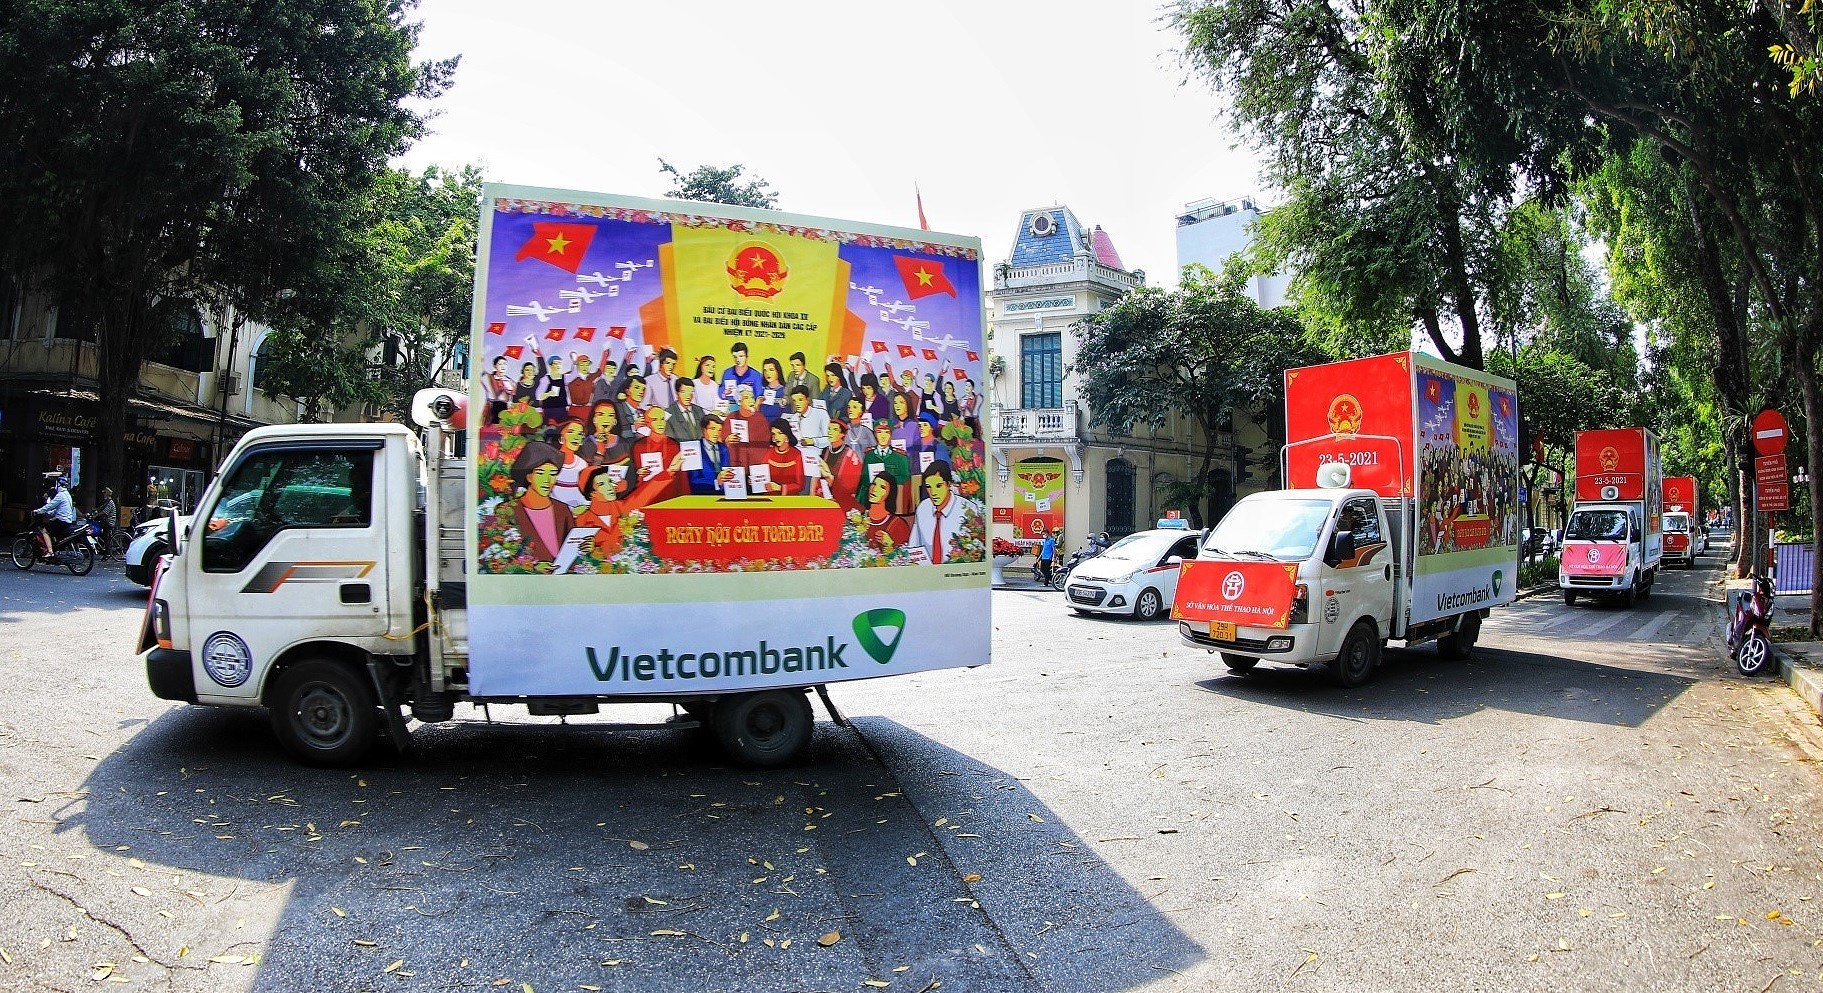 Elecciones en Vietnam evidencian democracia del socialismo, segun embajador laosiano hinh anh 1